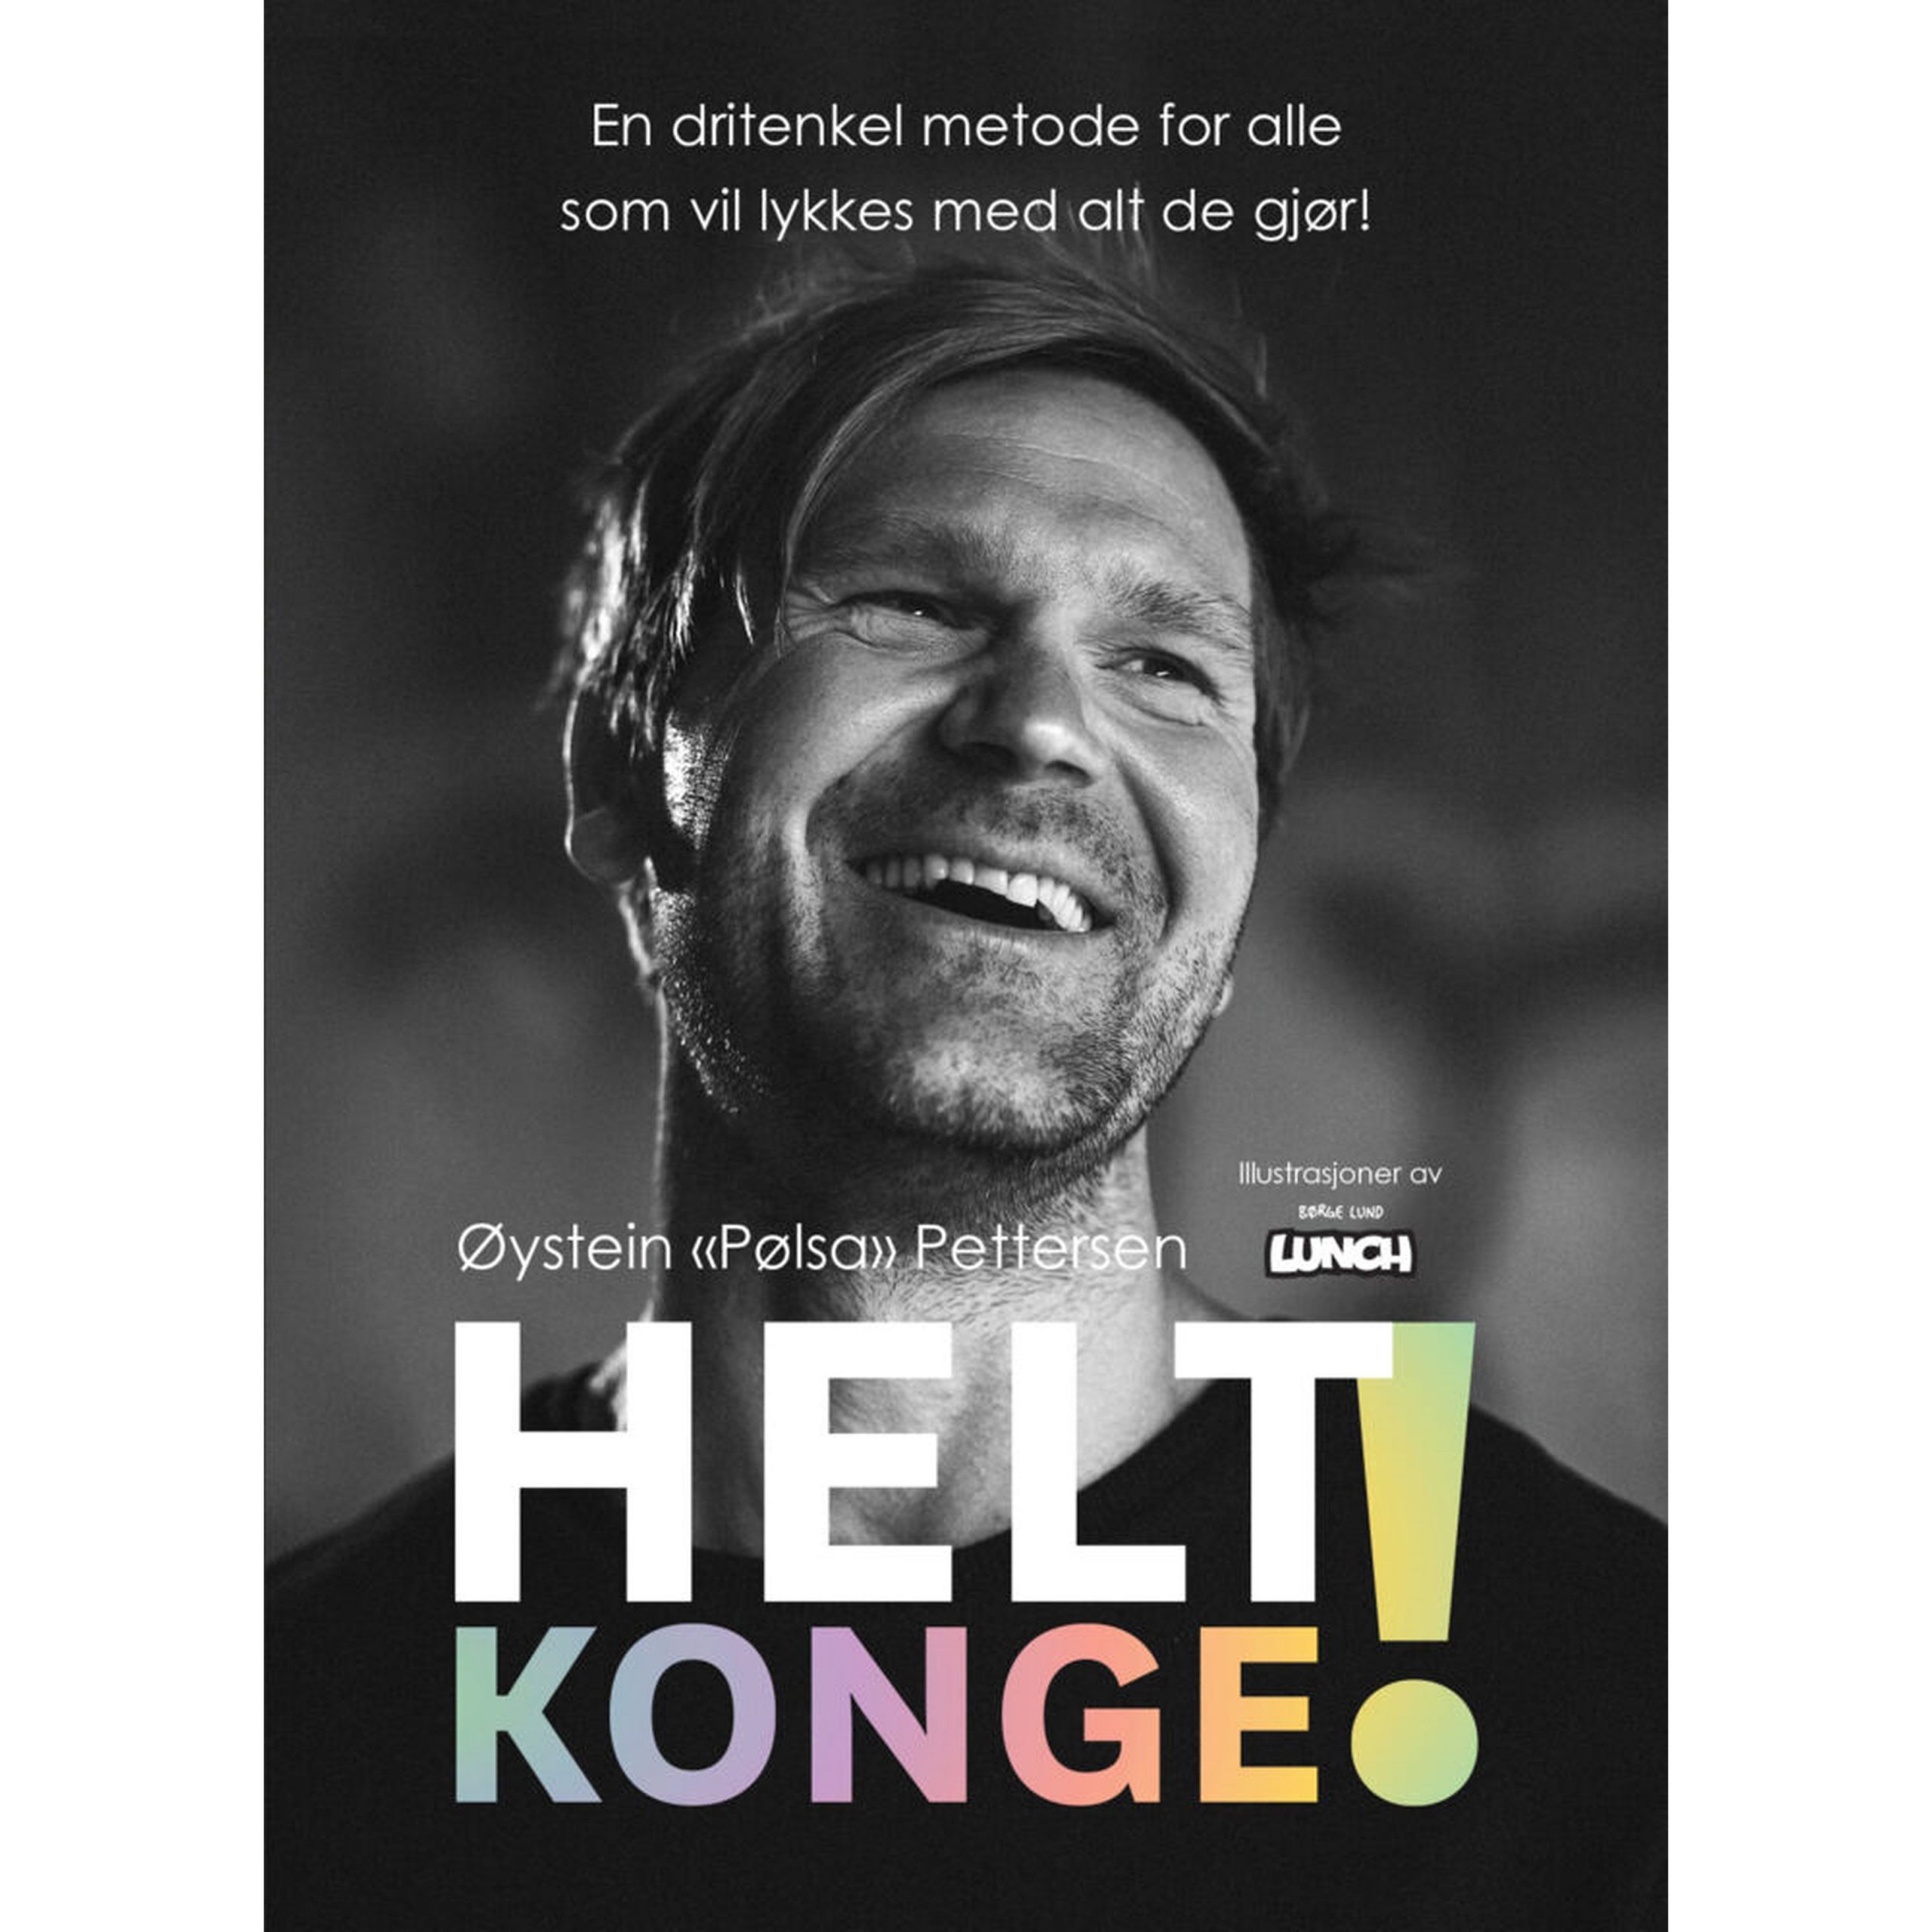 Vi har anmeldt Øystein Pettersens bokdebut «Helt konge»